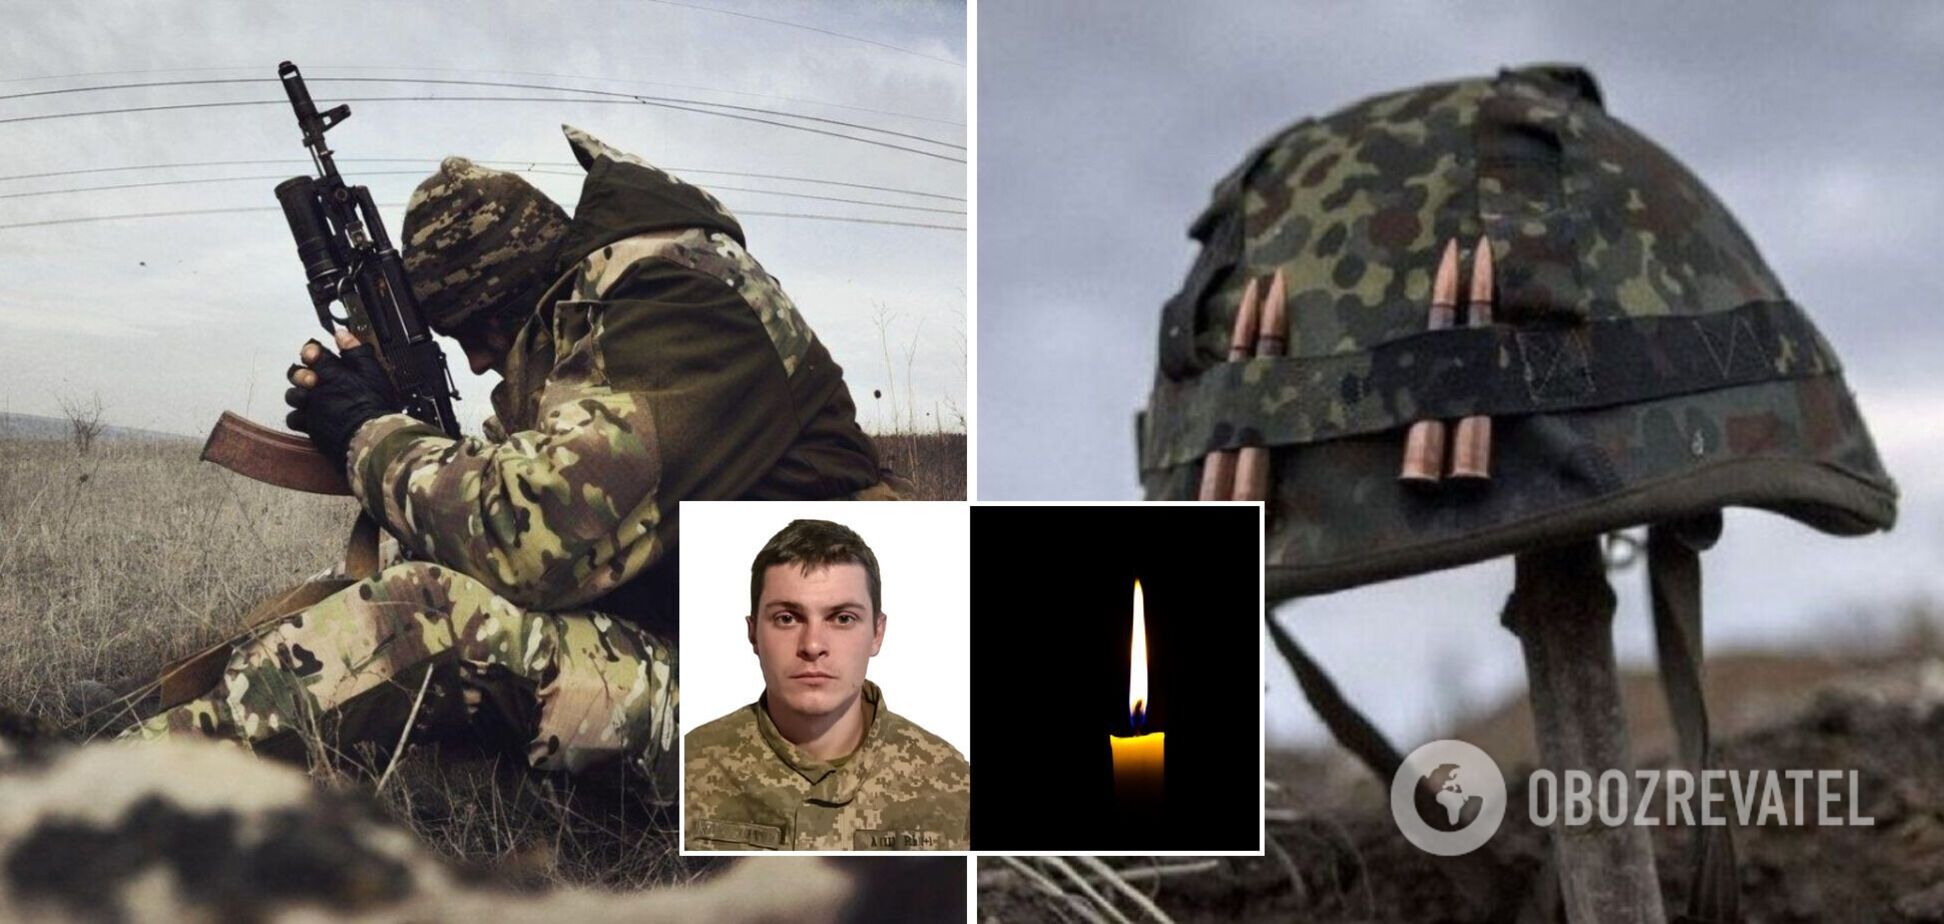 Стало известно имя бойца, убитого вражеским снайпером на Донбассе. Фото